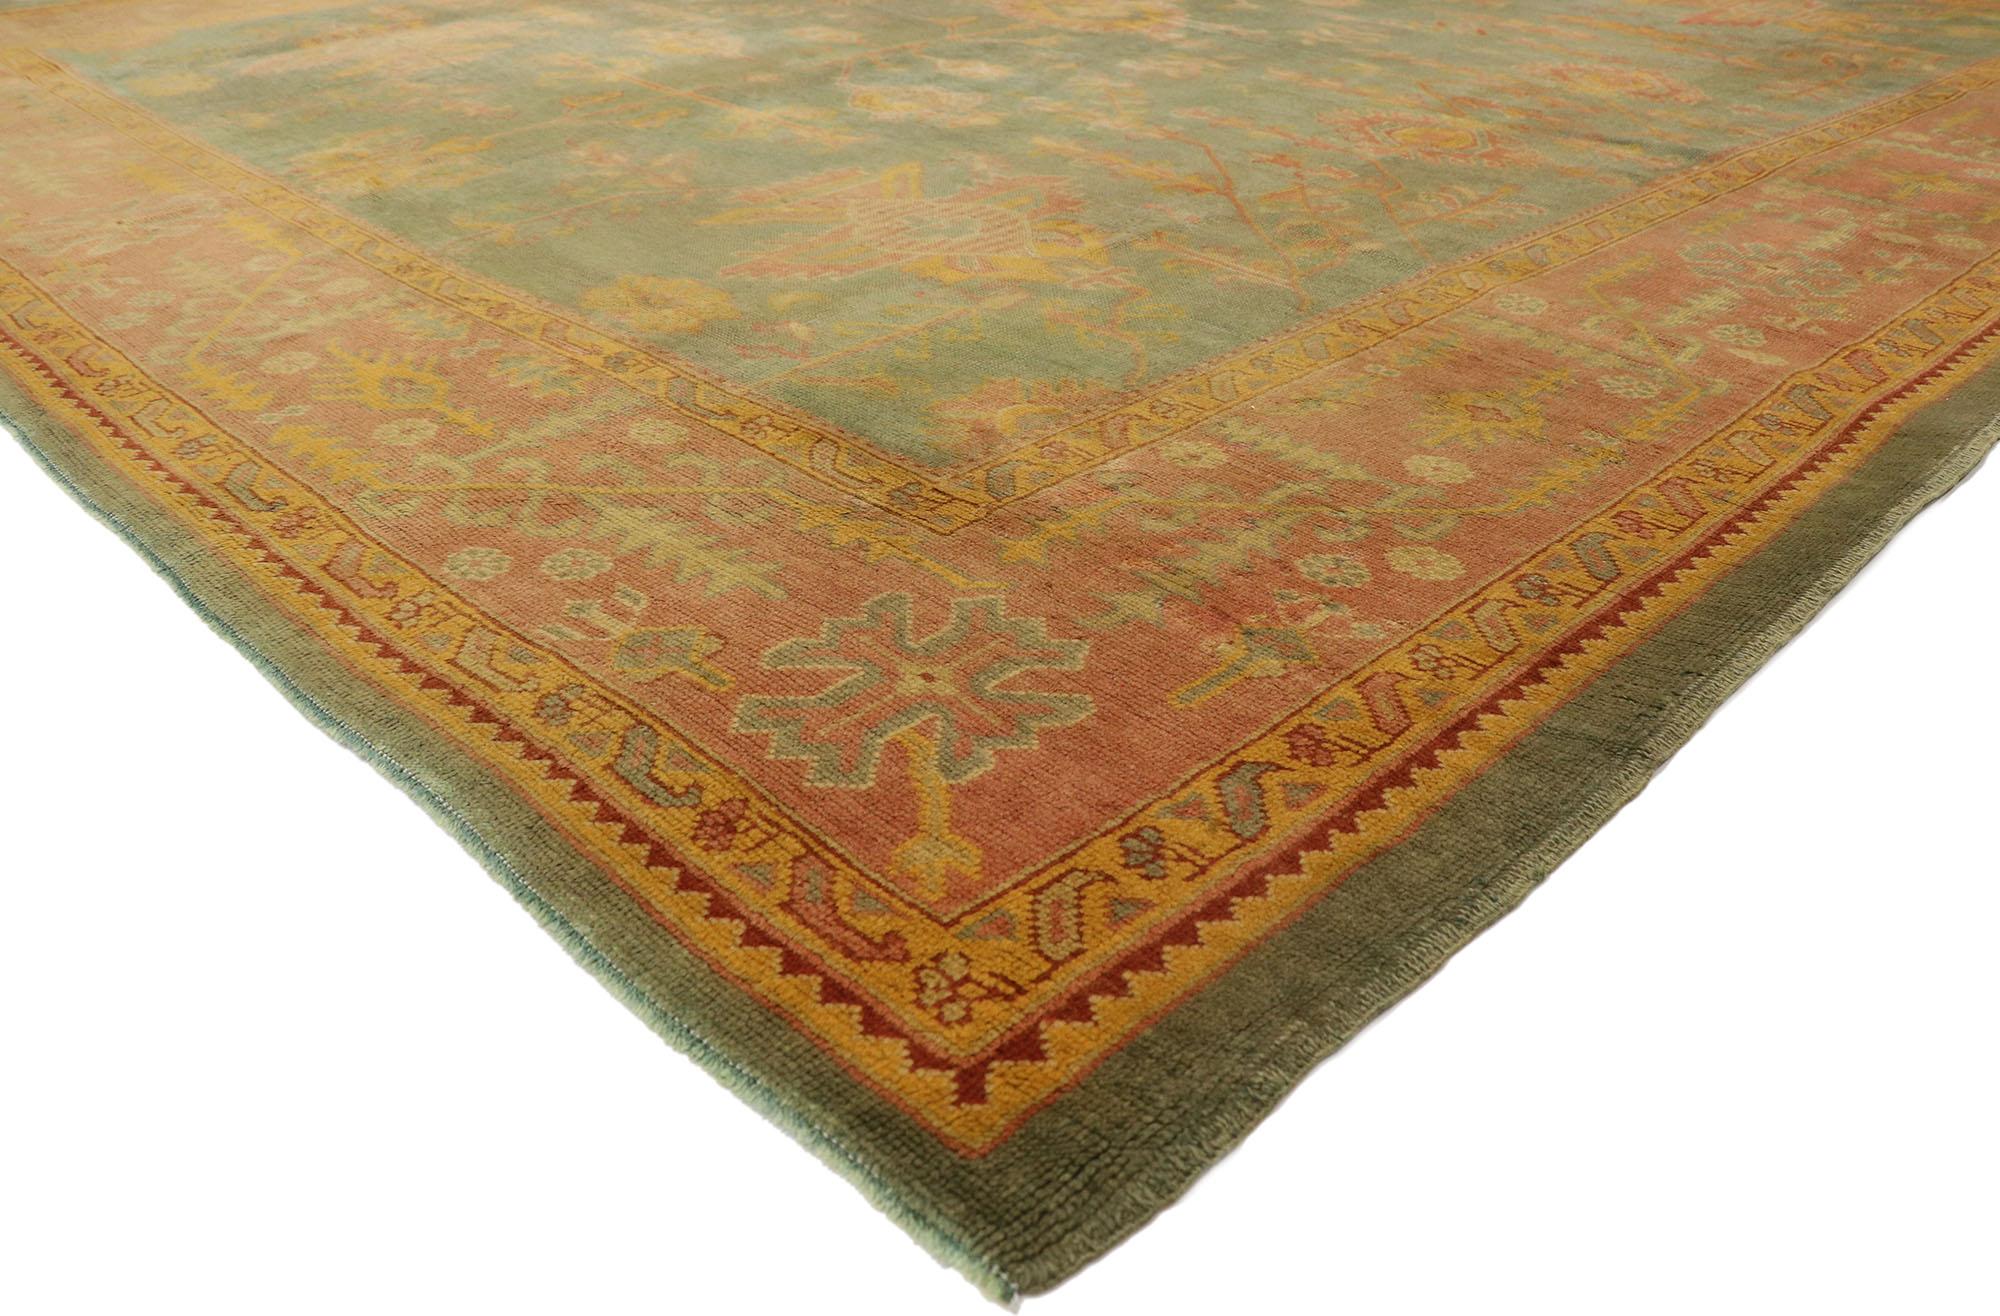 76747 Tapis turc antique Oushak, 10'09 x 11'09. Les tapis turcs Oushak, originaires de la région d'Oushak dans l'ouest de la Turquie, sont réputés pour leurs motifs complexes, leurs palettes de couleurs douces et leur laine de haute qualité.